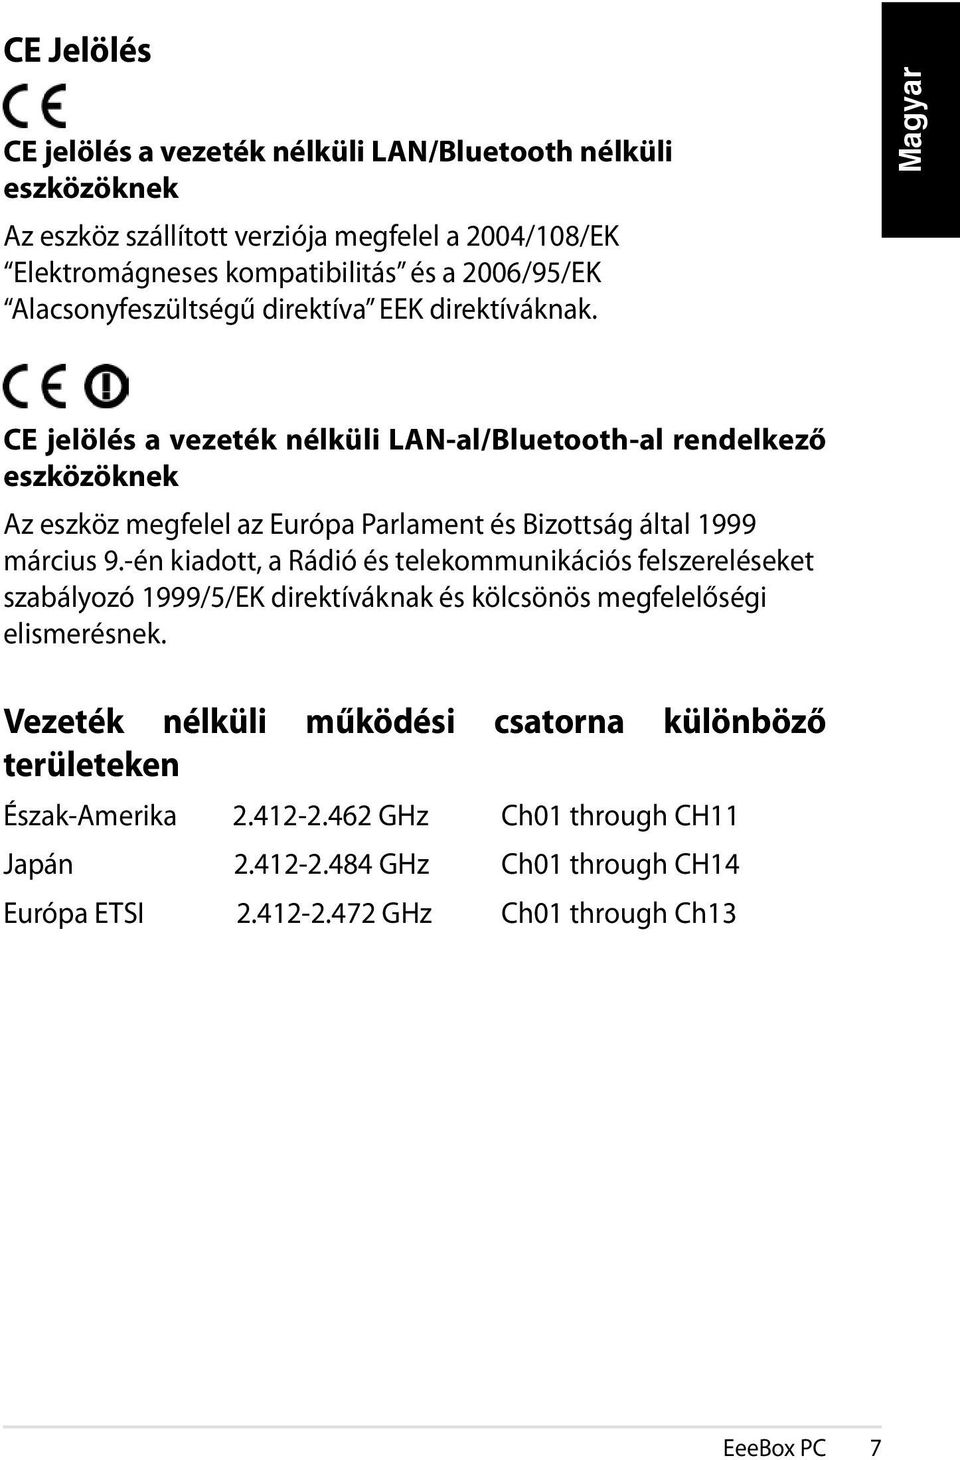 CE jelölés a vezeték nélküli LAN-al/Bluetooth-al rendelkező eszközöknek Az eszköz megfelel az Európa Parlament és Bizottság által 1999 március 9.